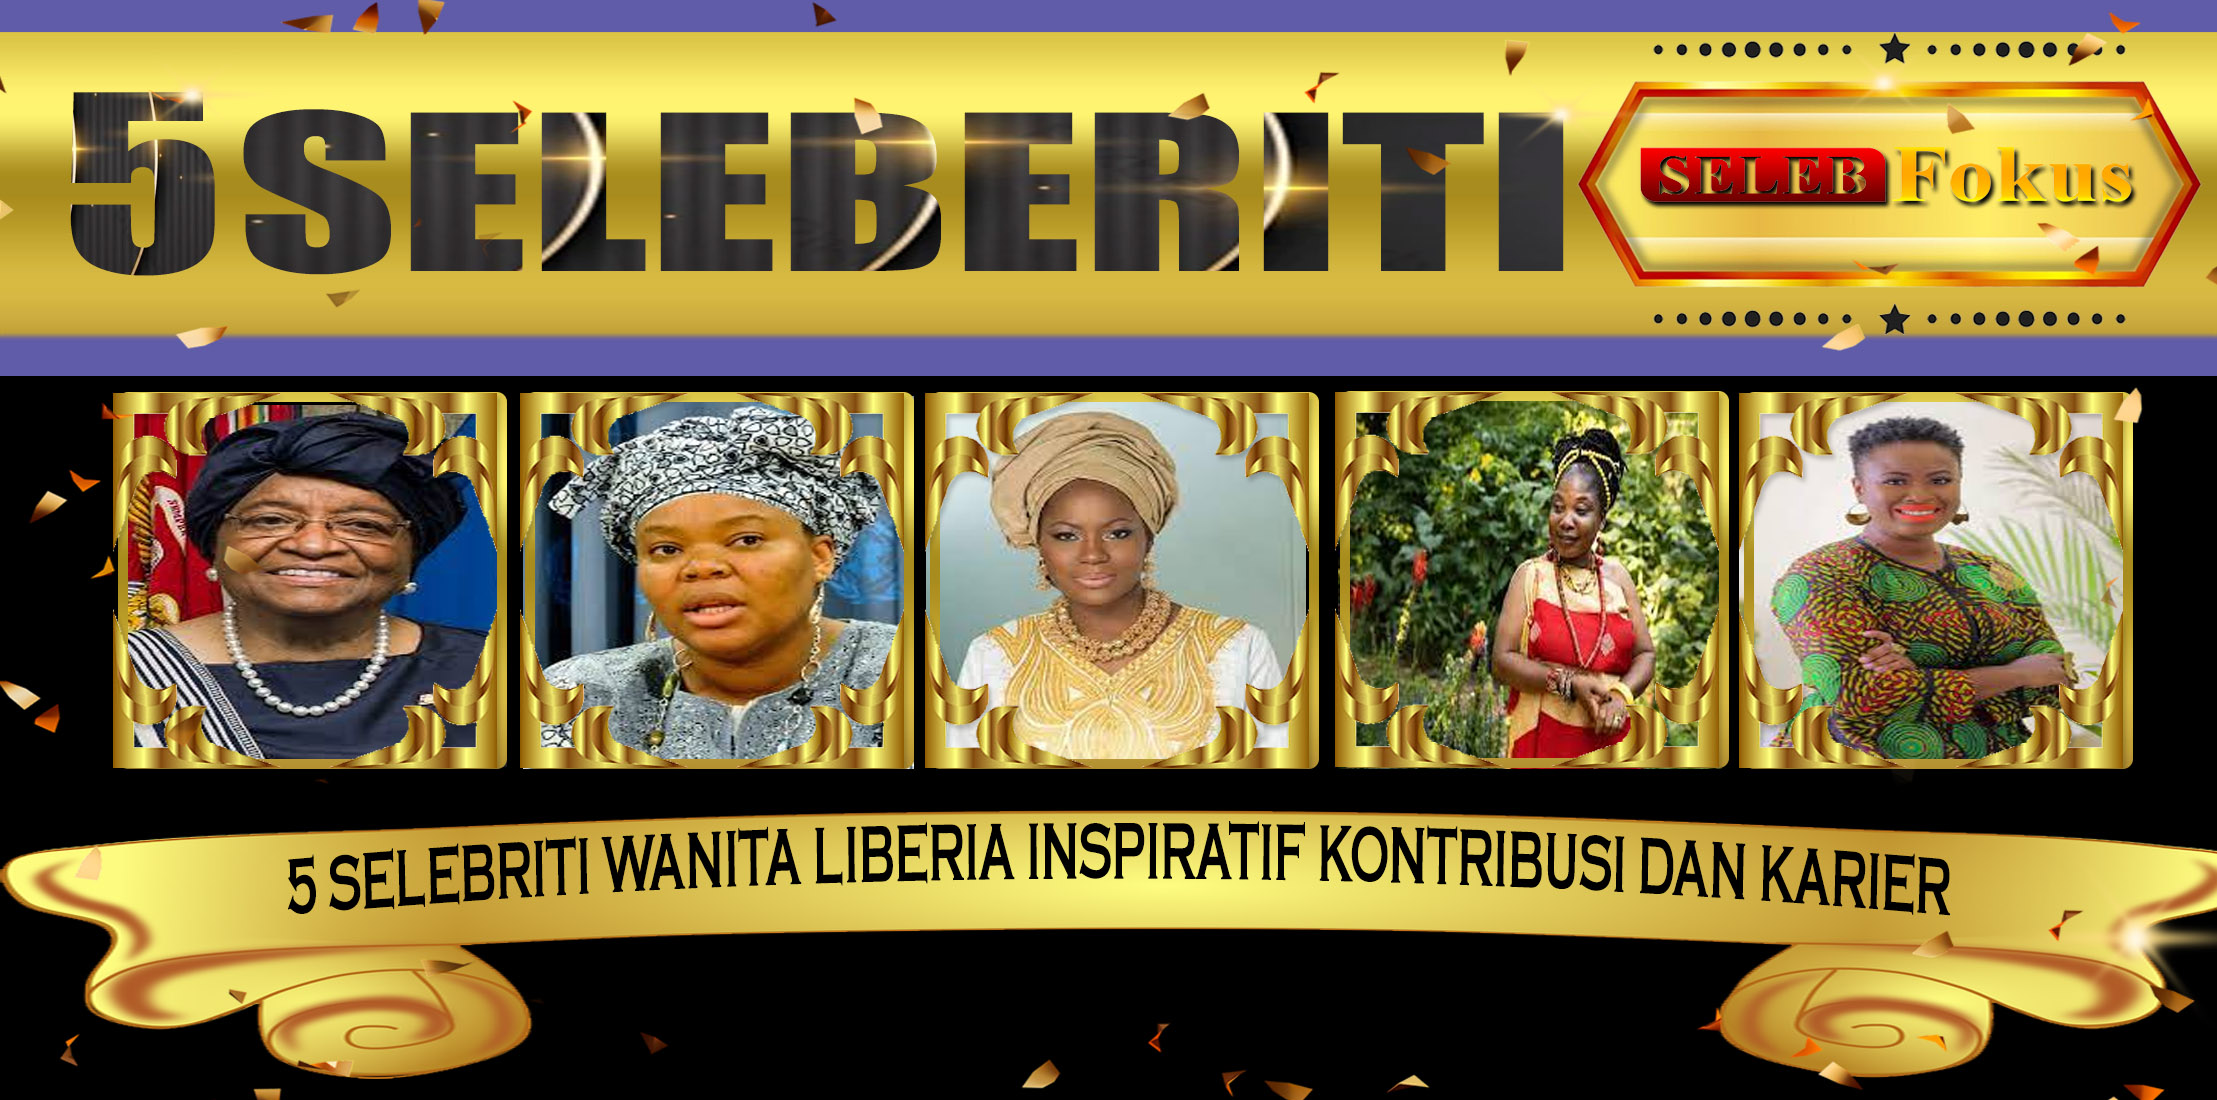 5 Selebriti Wanita Liberia Inspiratif Kontribusi dan Karier